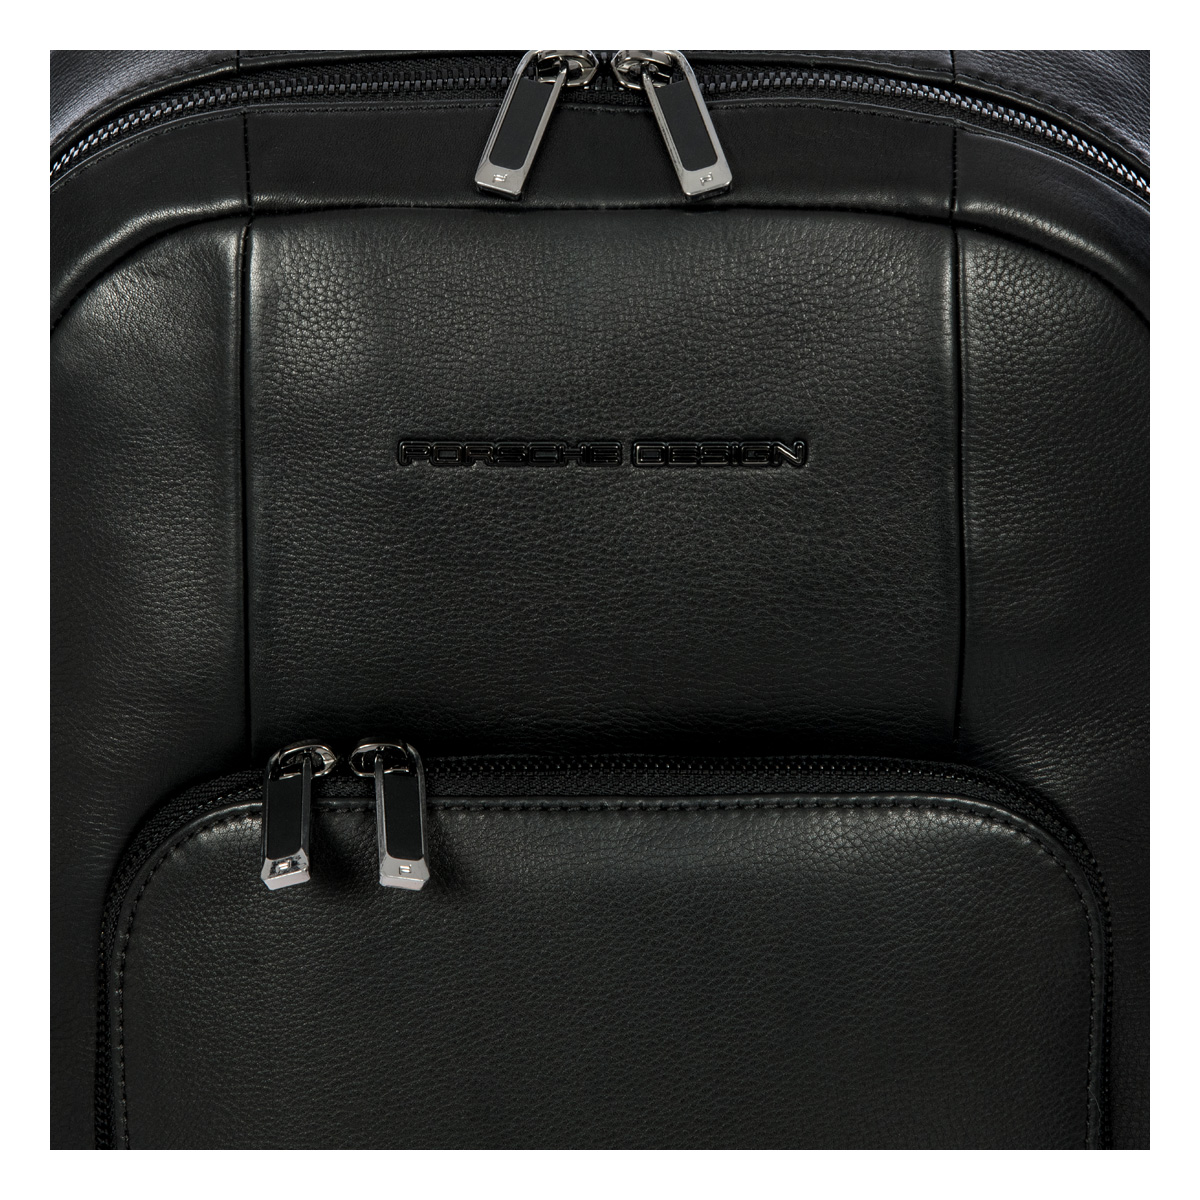 Porsche Design - Roadster Leather - Backpack M5